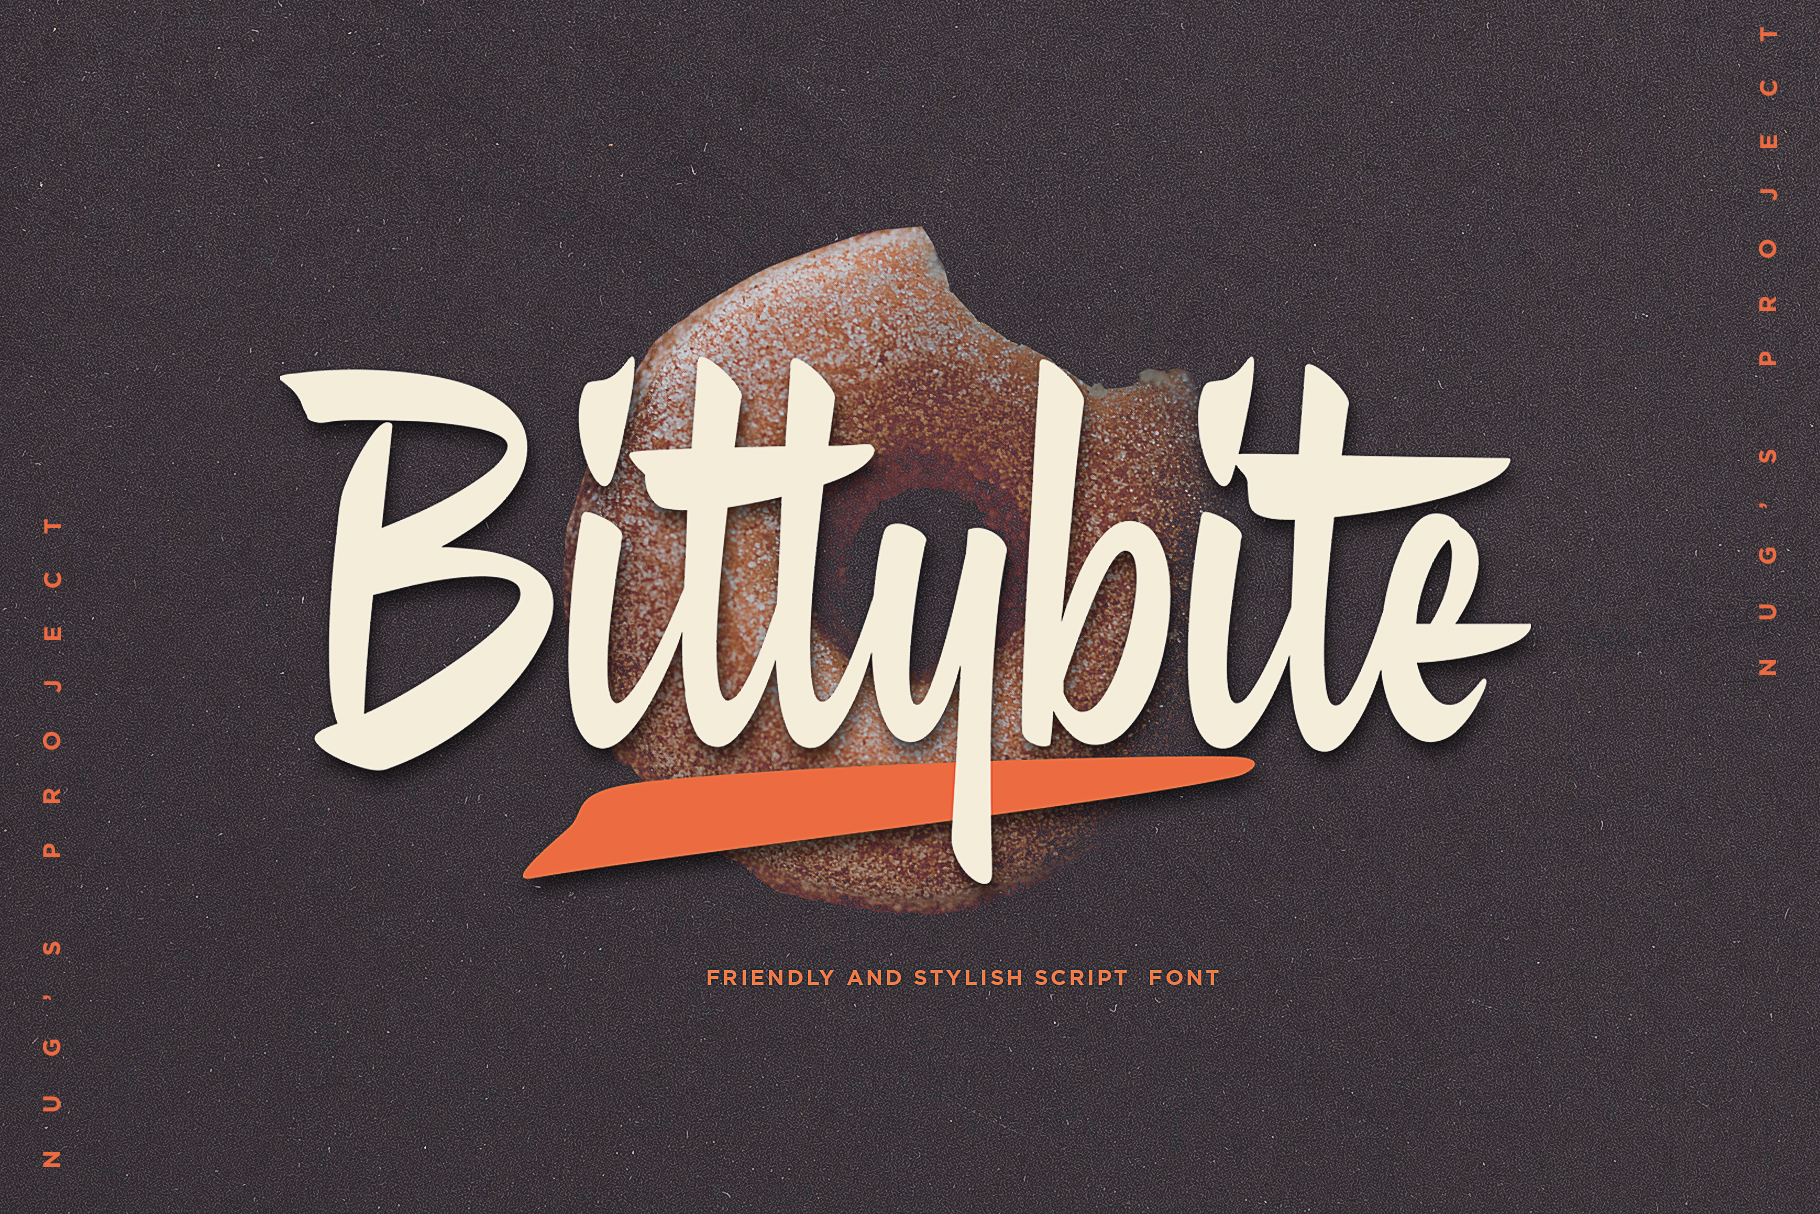 Bittybite